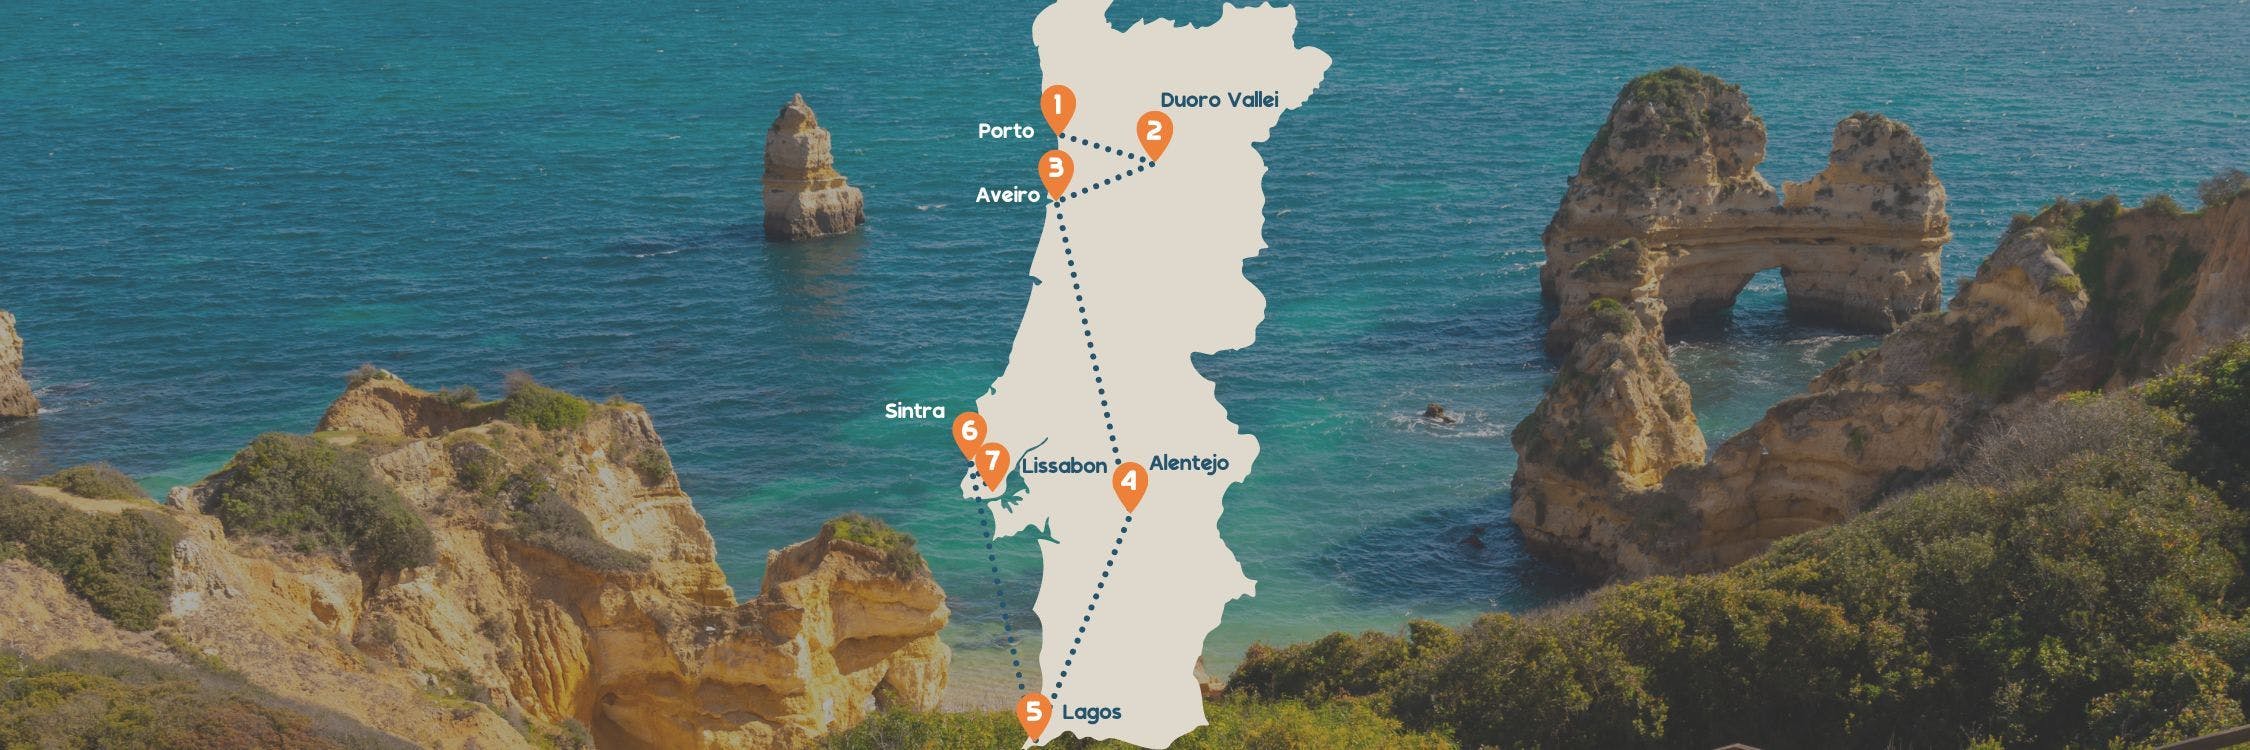 Portugal ultieme roadtrip routekaart desktop